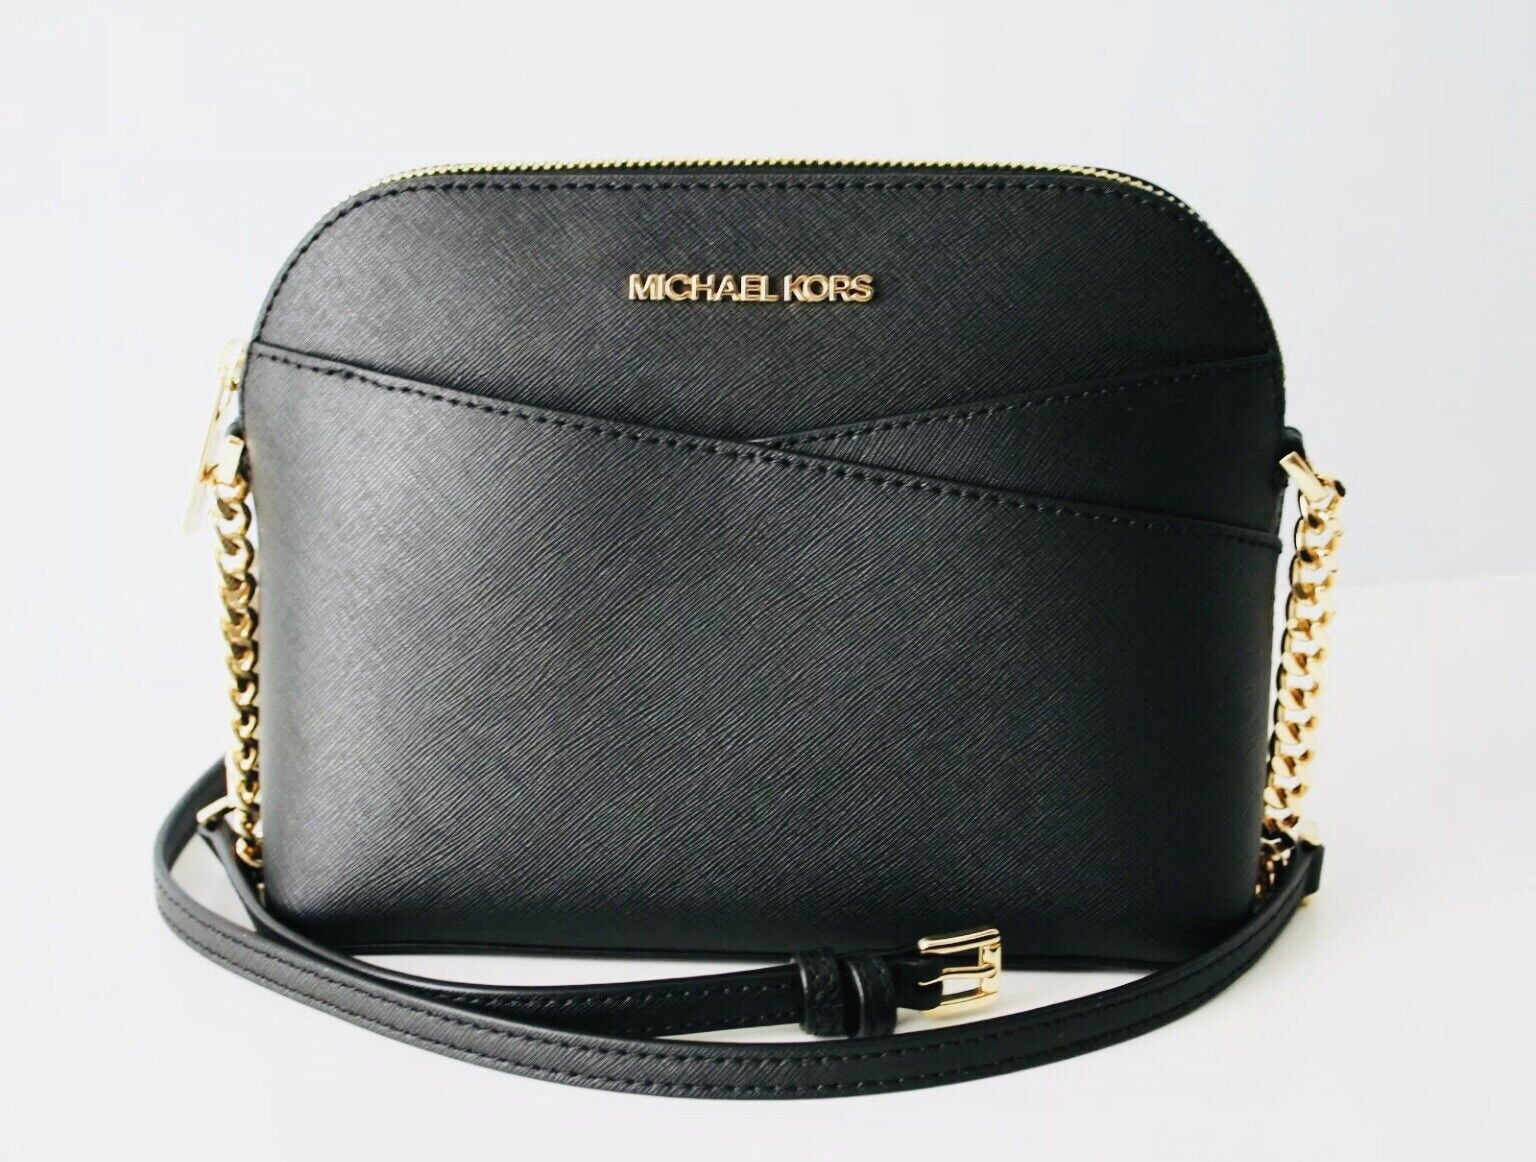 Cowhide Purse Crossbody Leather Handbag Clutch Bag Black Gold Acid Wash -  Etsy